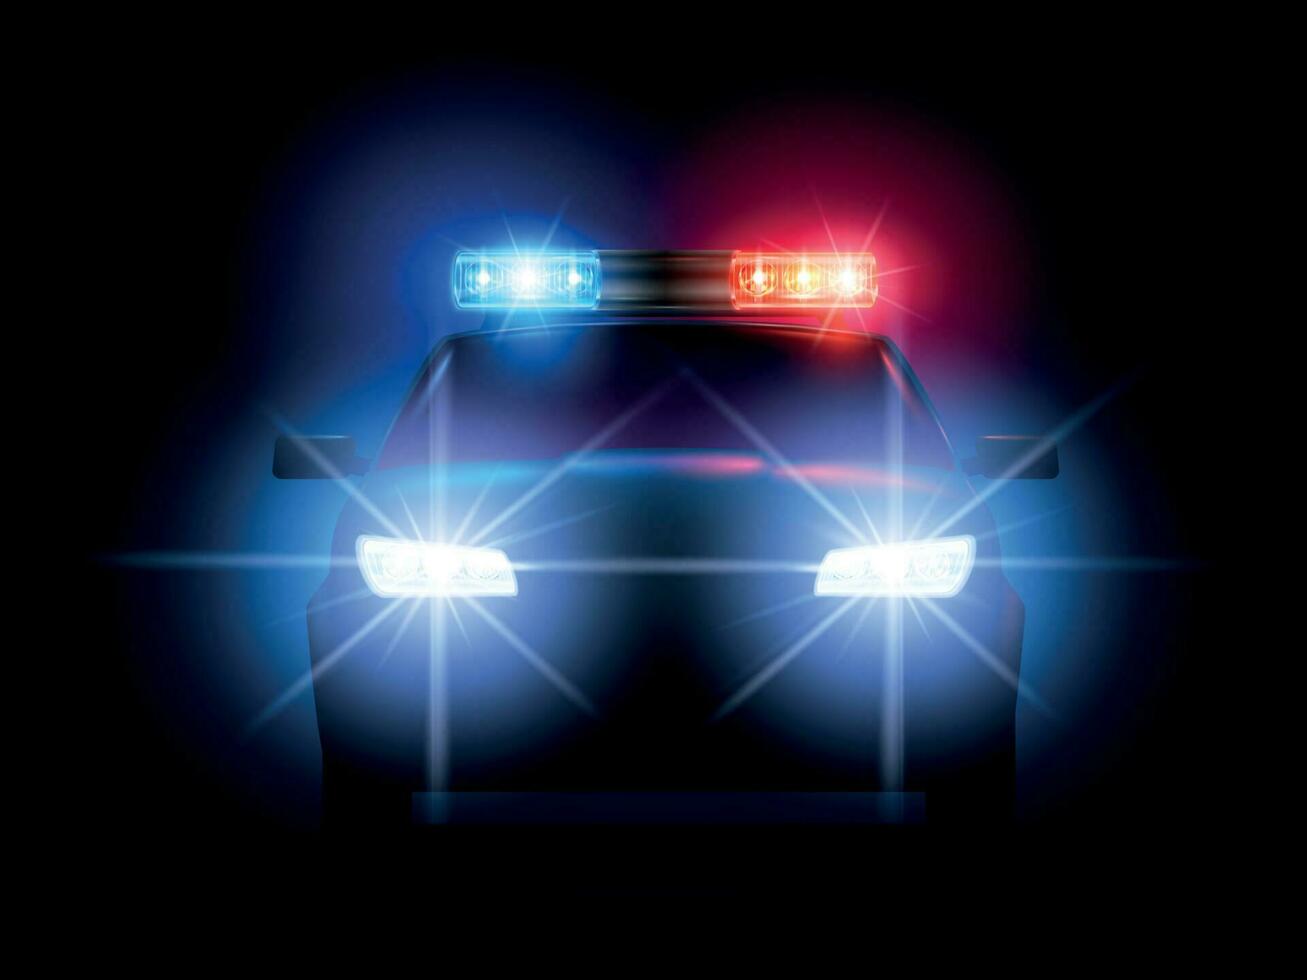 Por qué las luces de las sirenas policiales son rojas y azules? - Quora